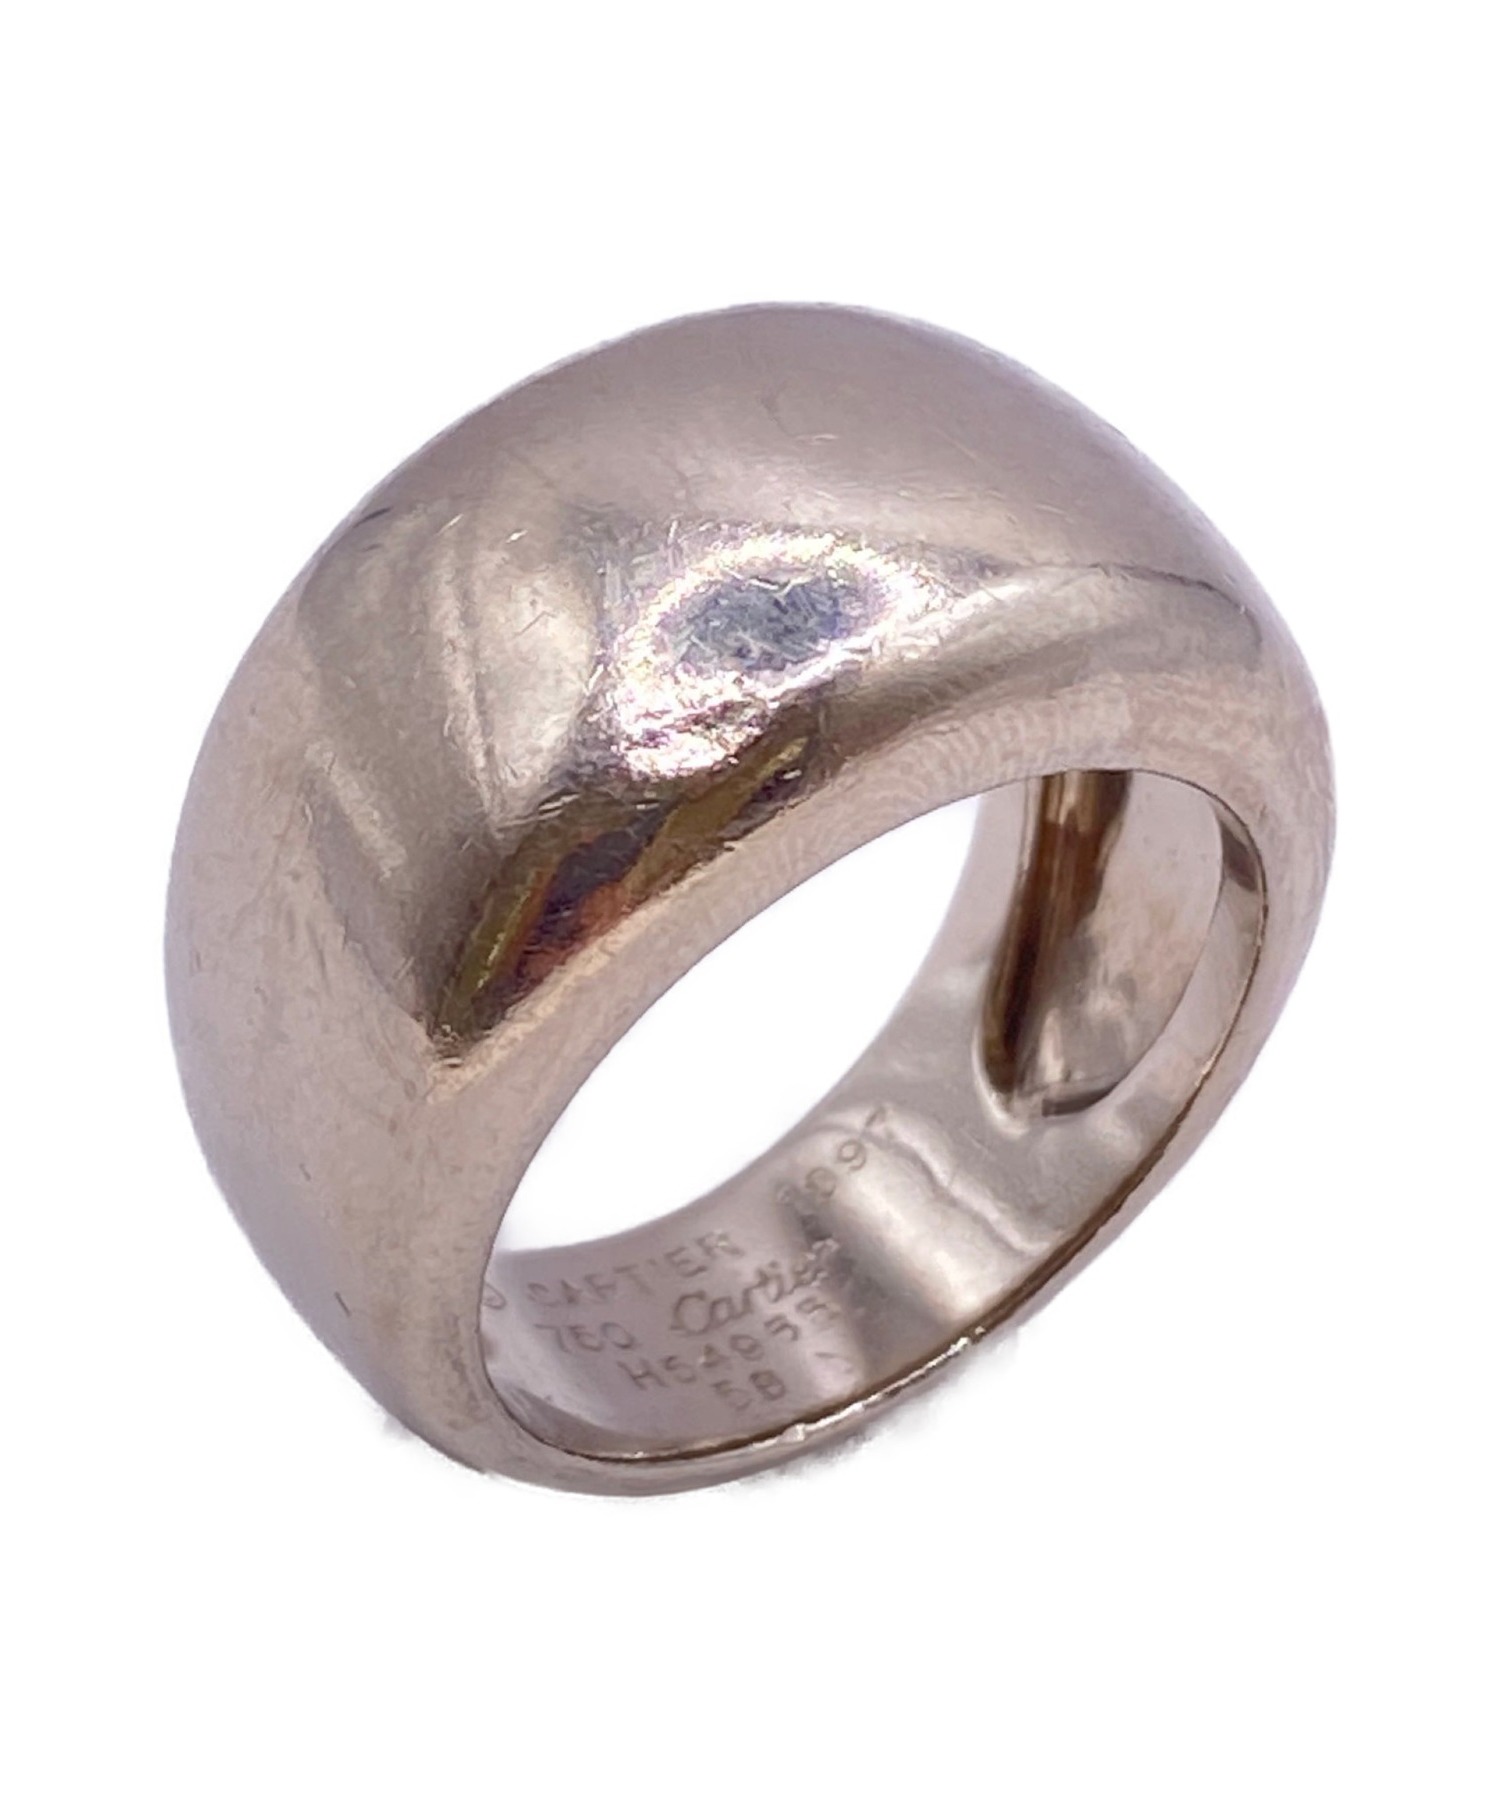 豪奢品 カルティエ ヌーベルバーグリング 指輪 58サイズ WG 